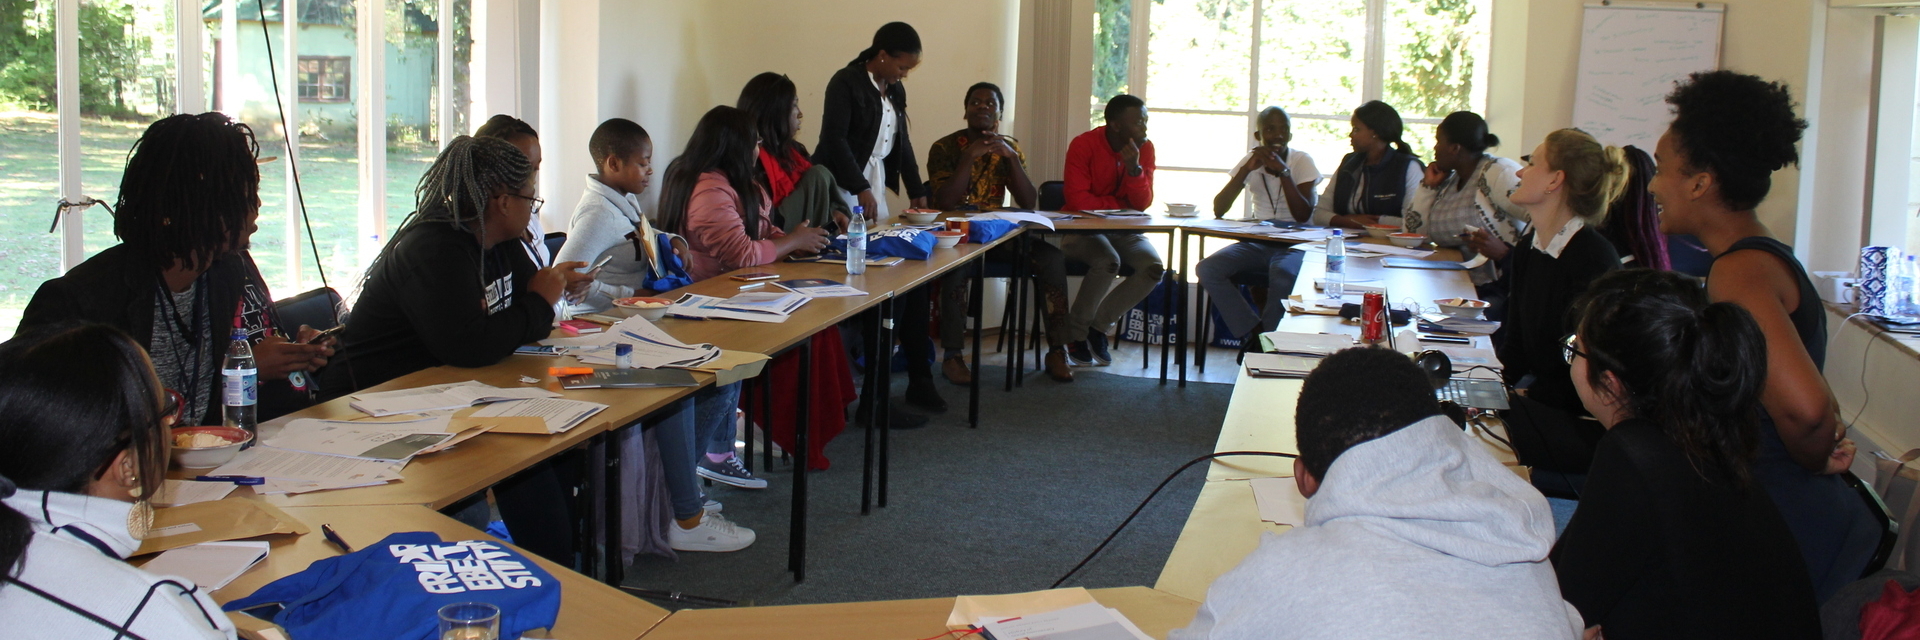 Studenten in einem Seminar der Universität Fort Hare in Südafrika